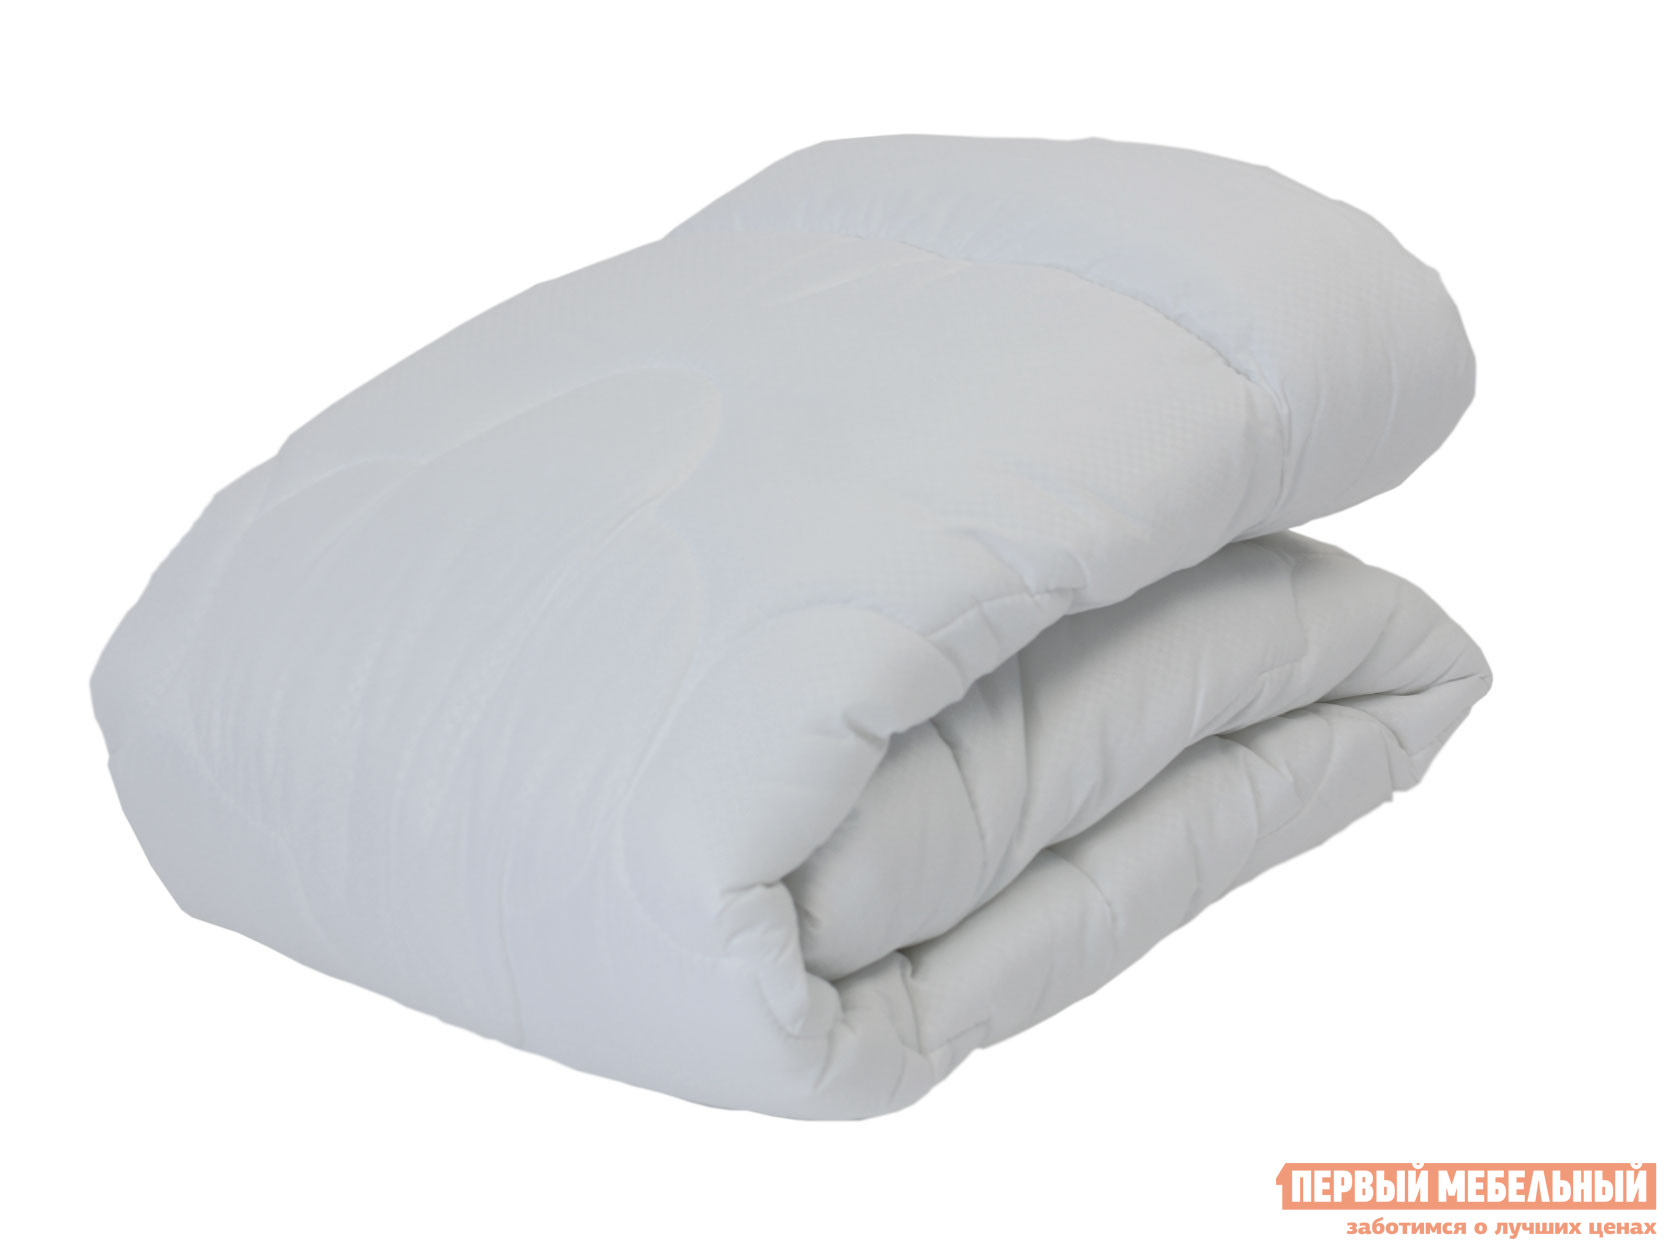 Одеяло  Бамбук Комфорт всесезонное Белый, 1400 х 2050 мм от Первый Мебельный